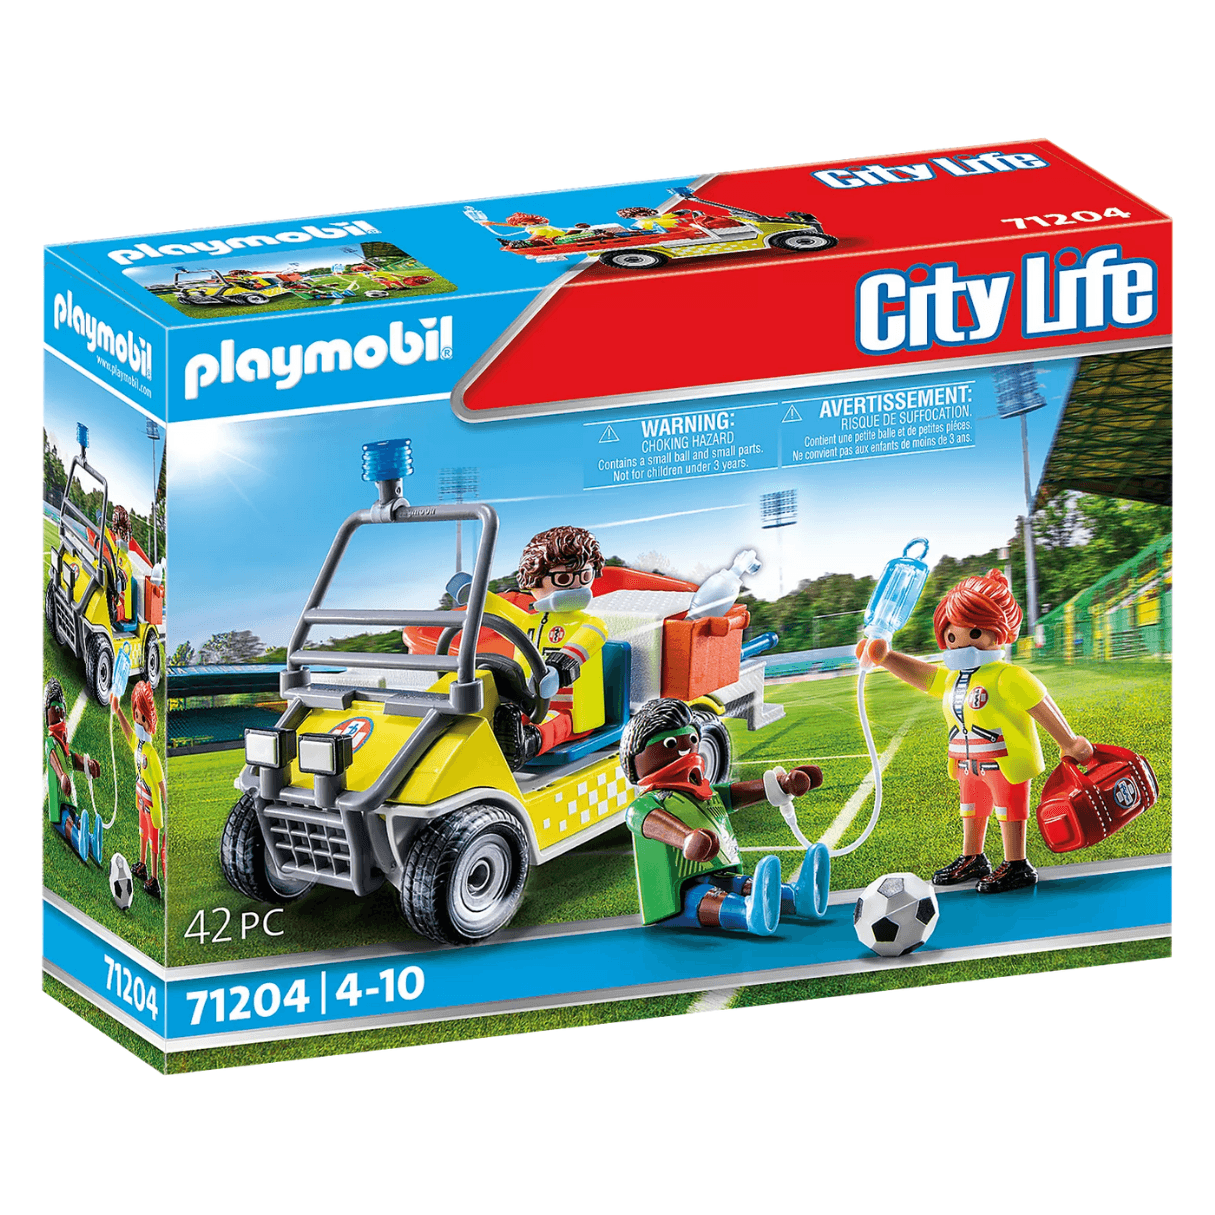 Playmobil: samochód ratunkowy City Life - Noski Noski